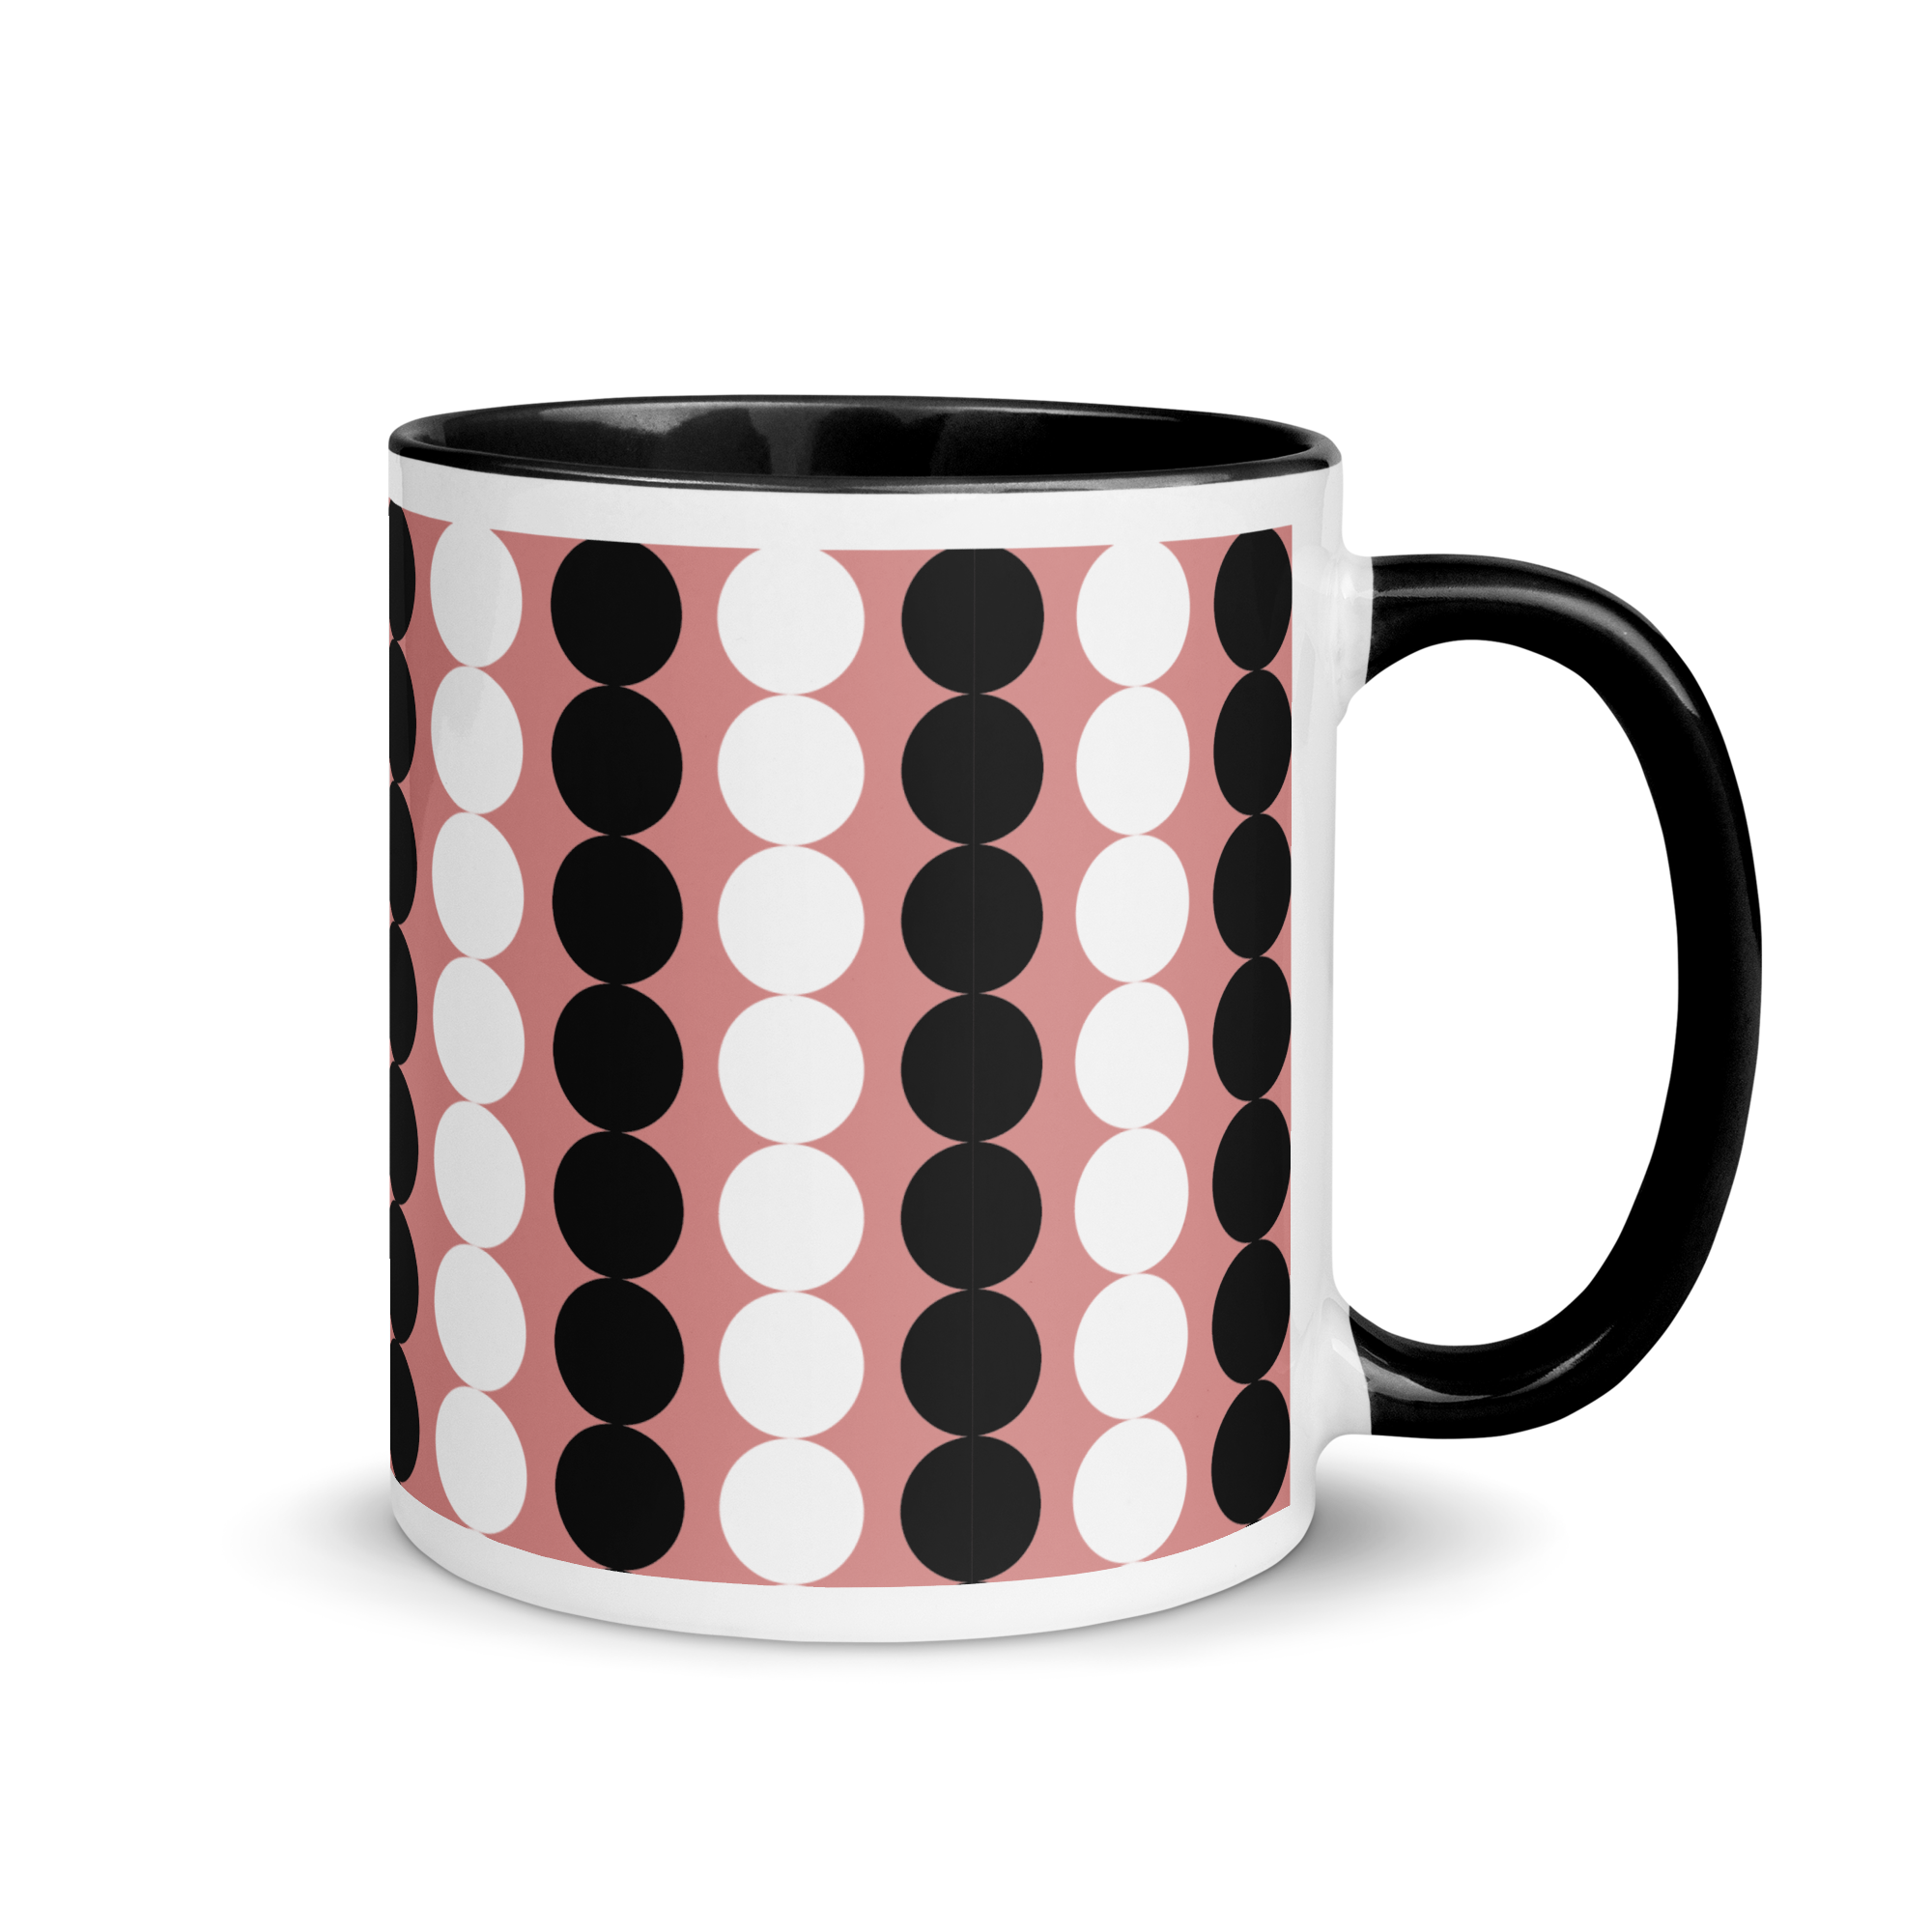 white-ceramic-mug-with-color-inside-black-11-oz-right-65e471a99c8fa.png